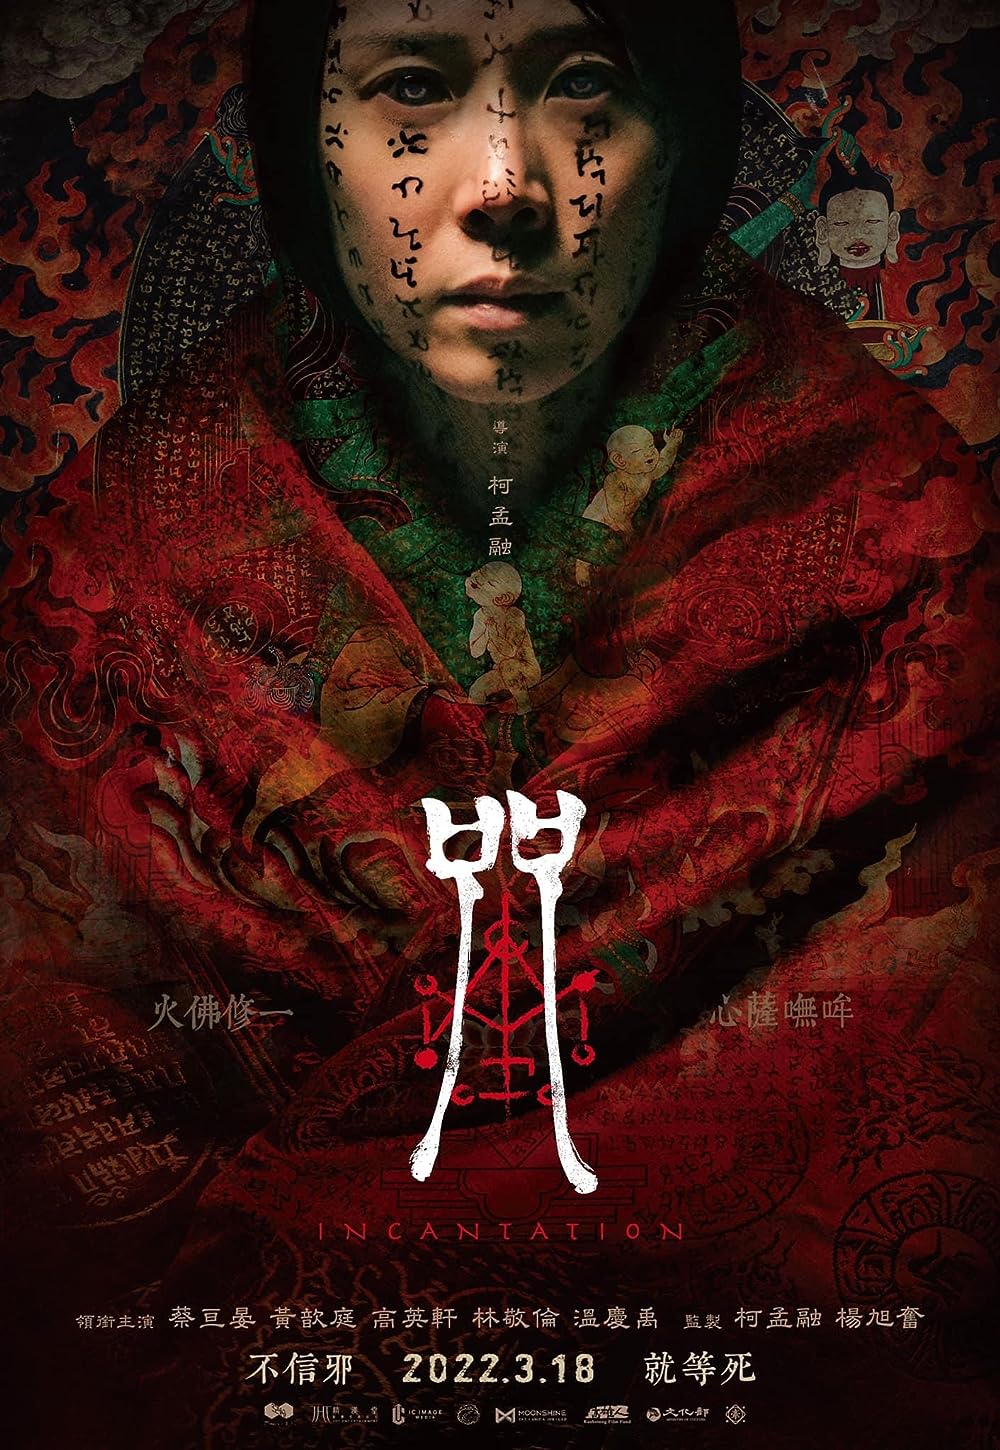 Incantation là bộ phim kinh dị hay nhất của Đài Loan do giới chuyên môn bình chọn